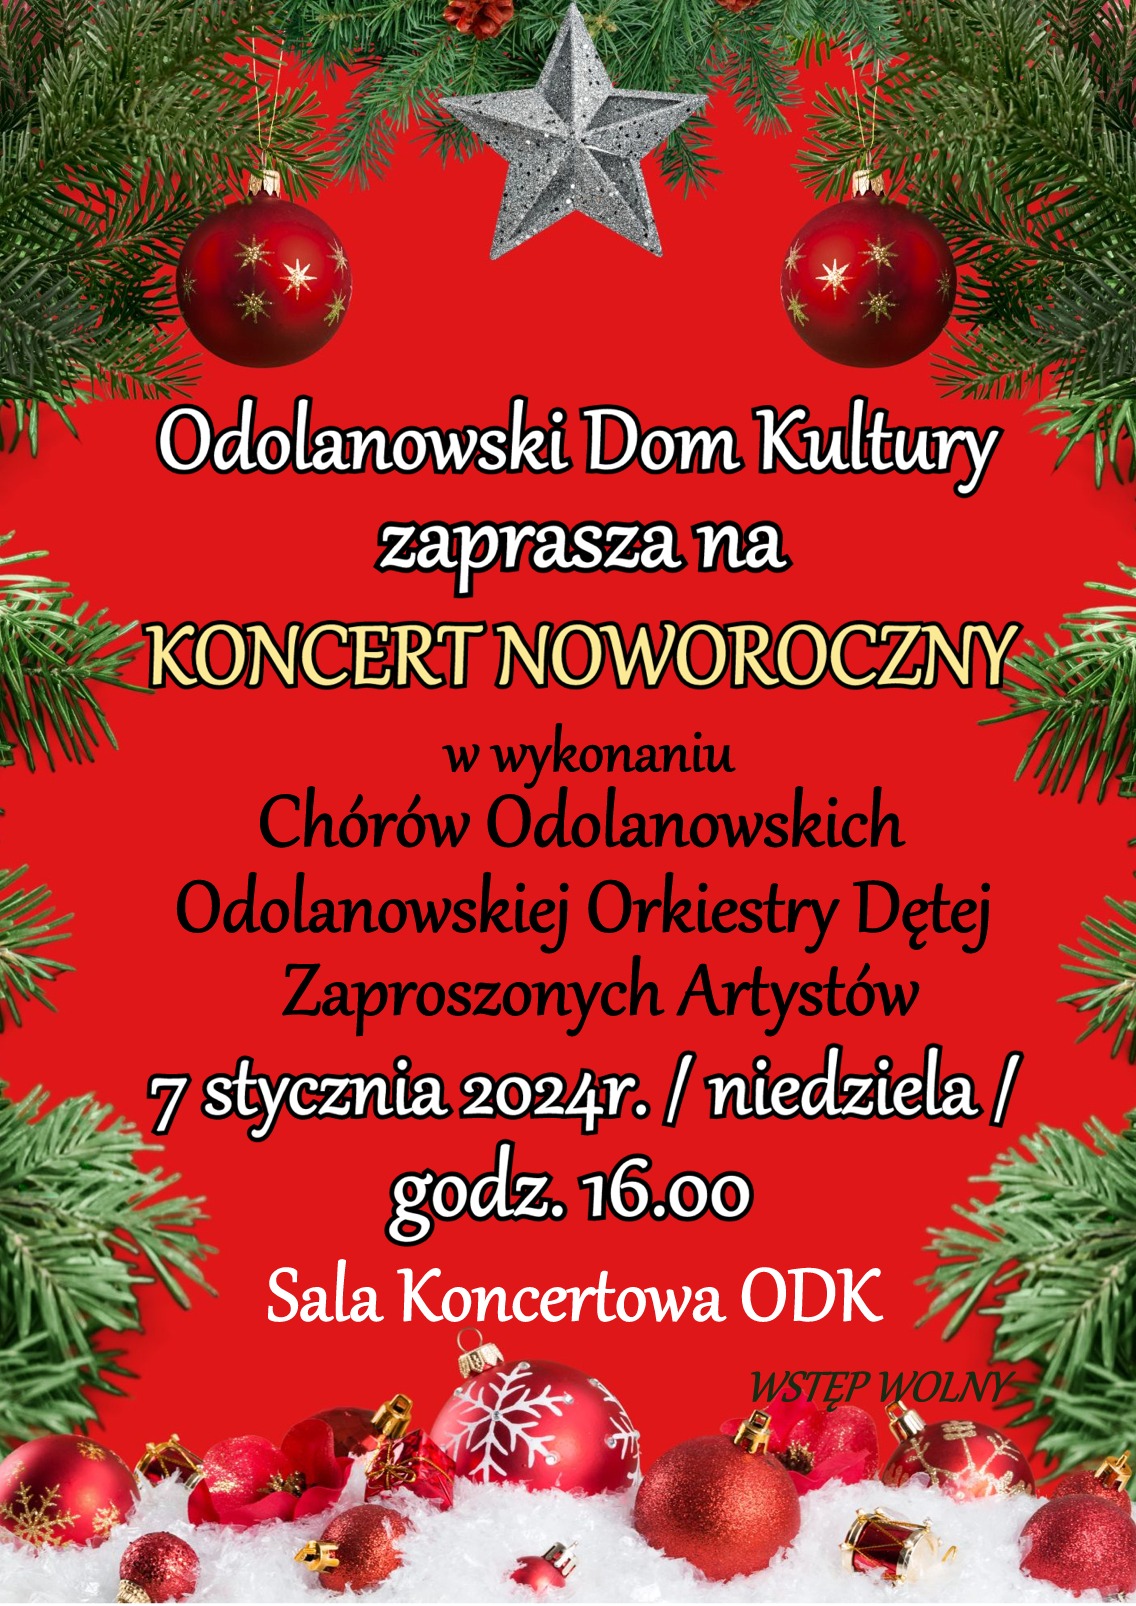 Odolanowski Dom Kultury zaprasza na koncert noworoczny w dniu 7 stycznia 2024 r.